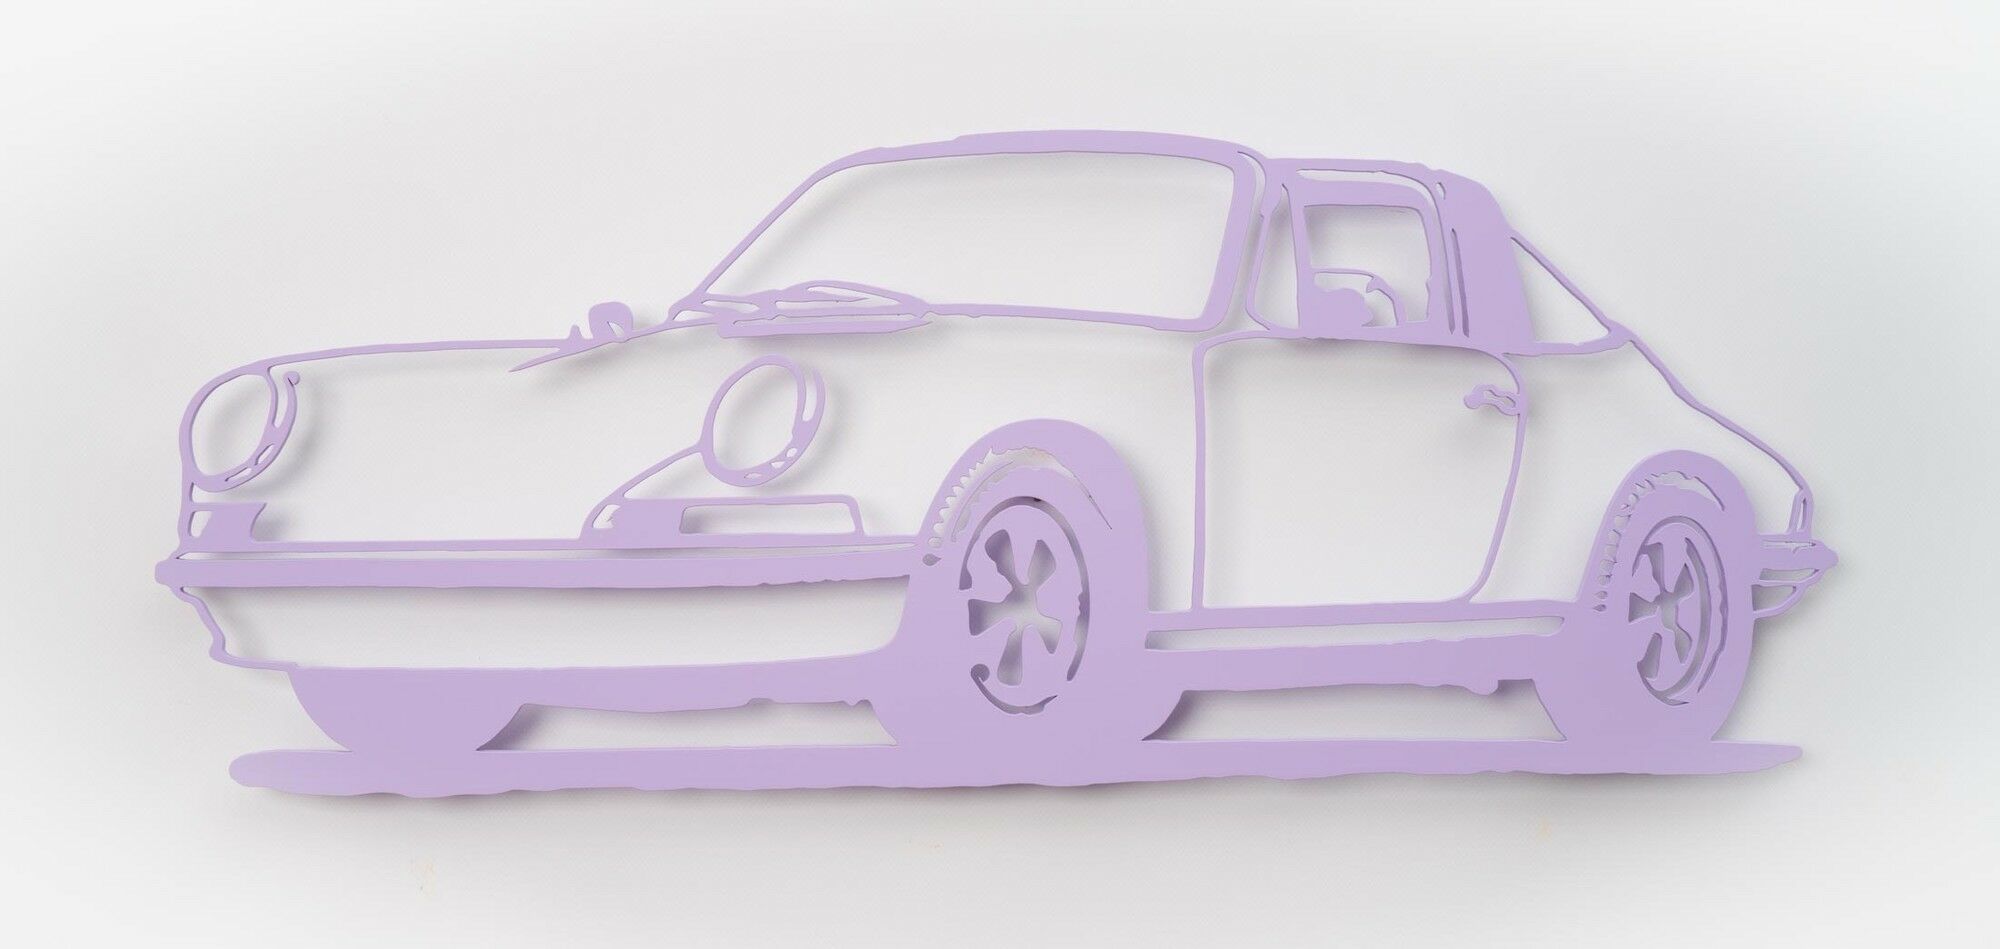 Wandobject "Porsche 911 Targa (lila)" (2021) (Uniek stuk) von Jan M. Petersen